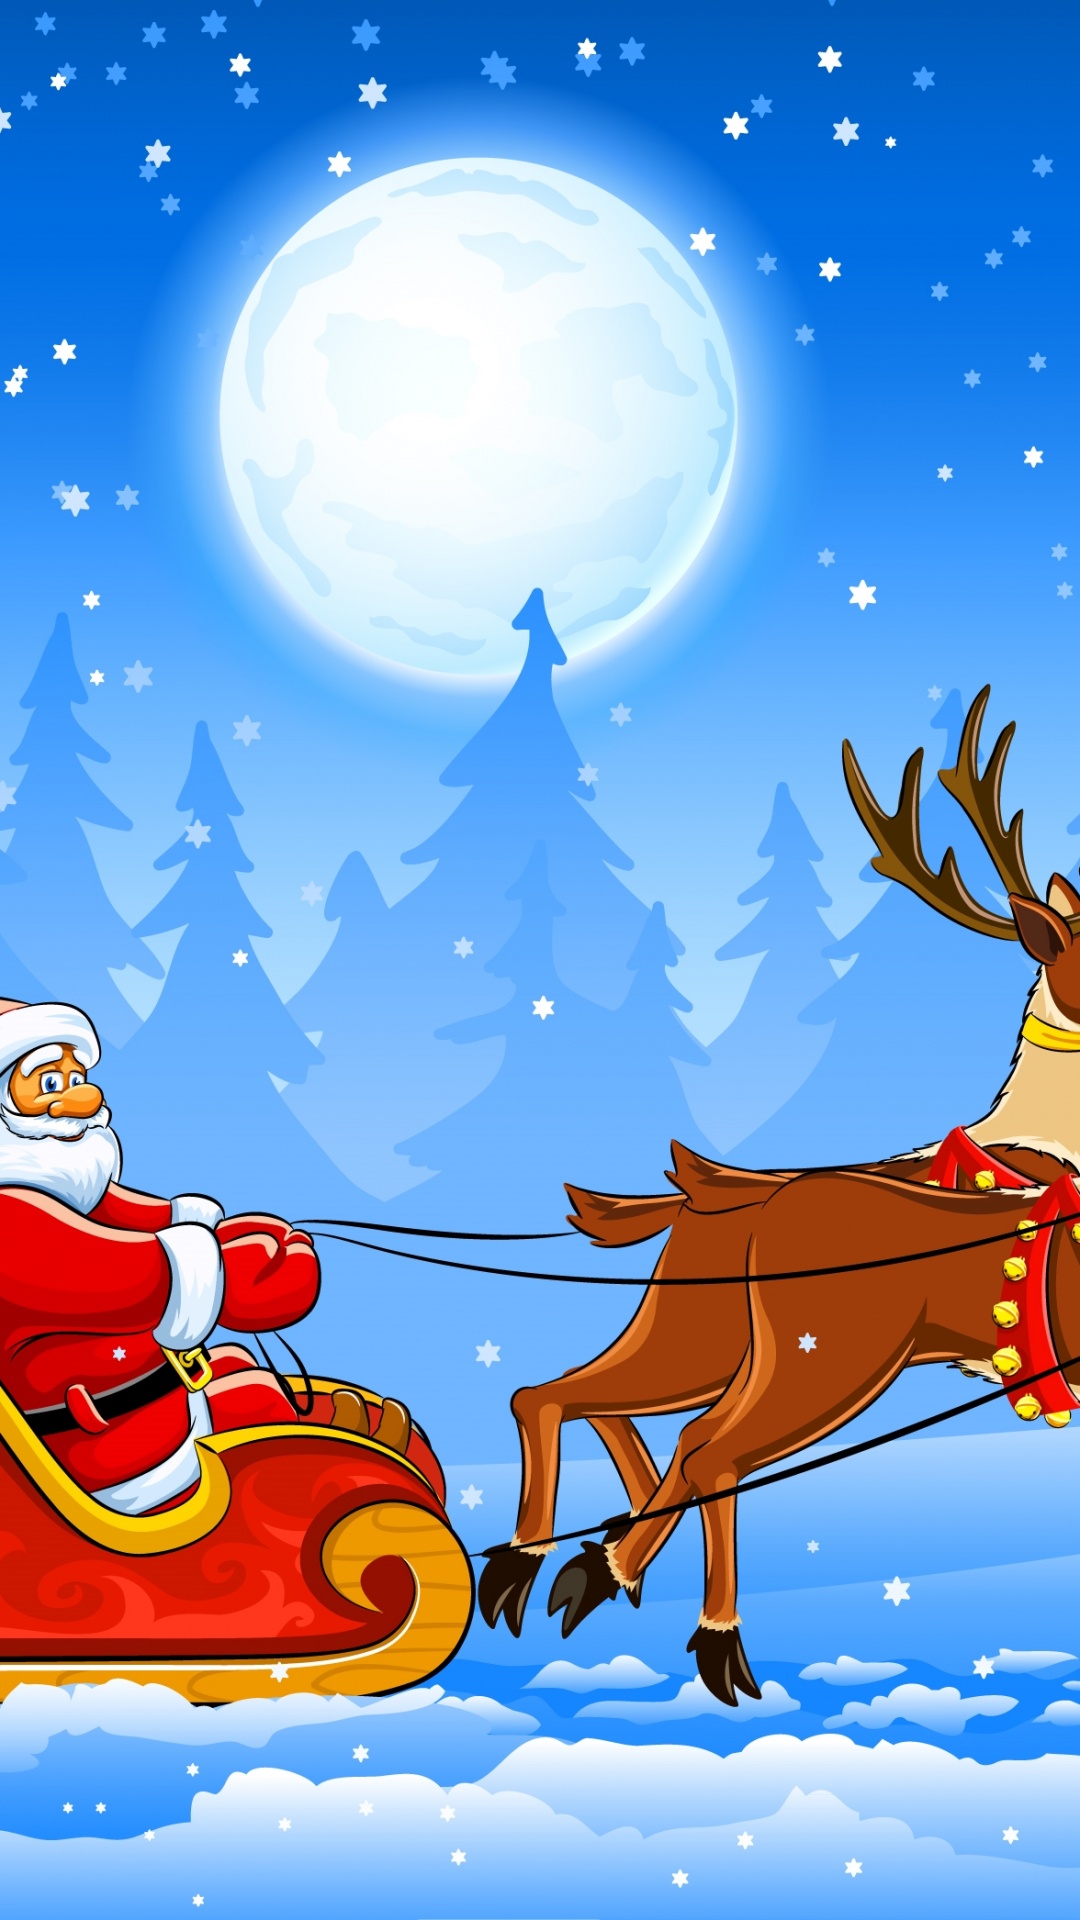 驯鹿, 圣诞老人, 雪橇, 圣诞节那天, 矢量图形 壁纸 1080x1920 允许